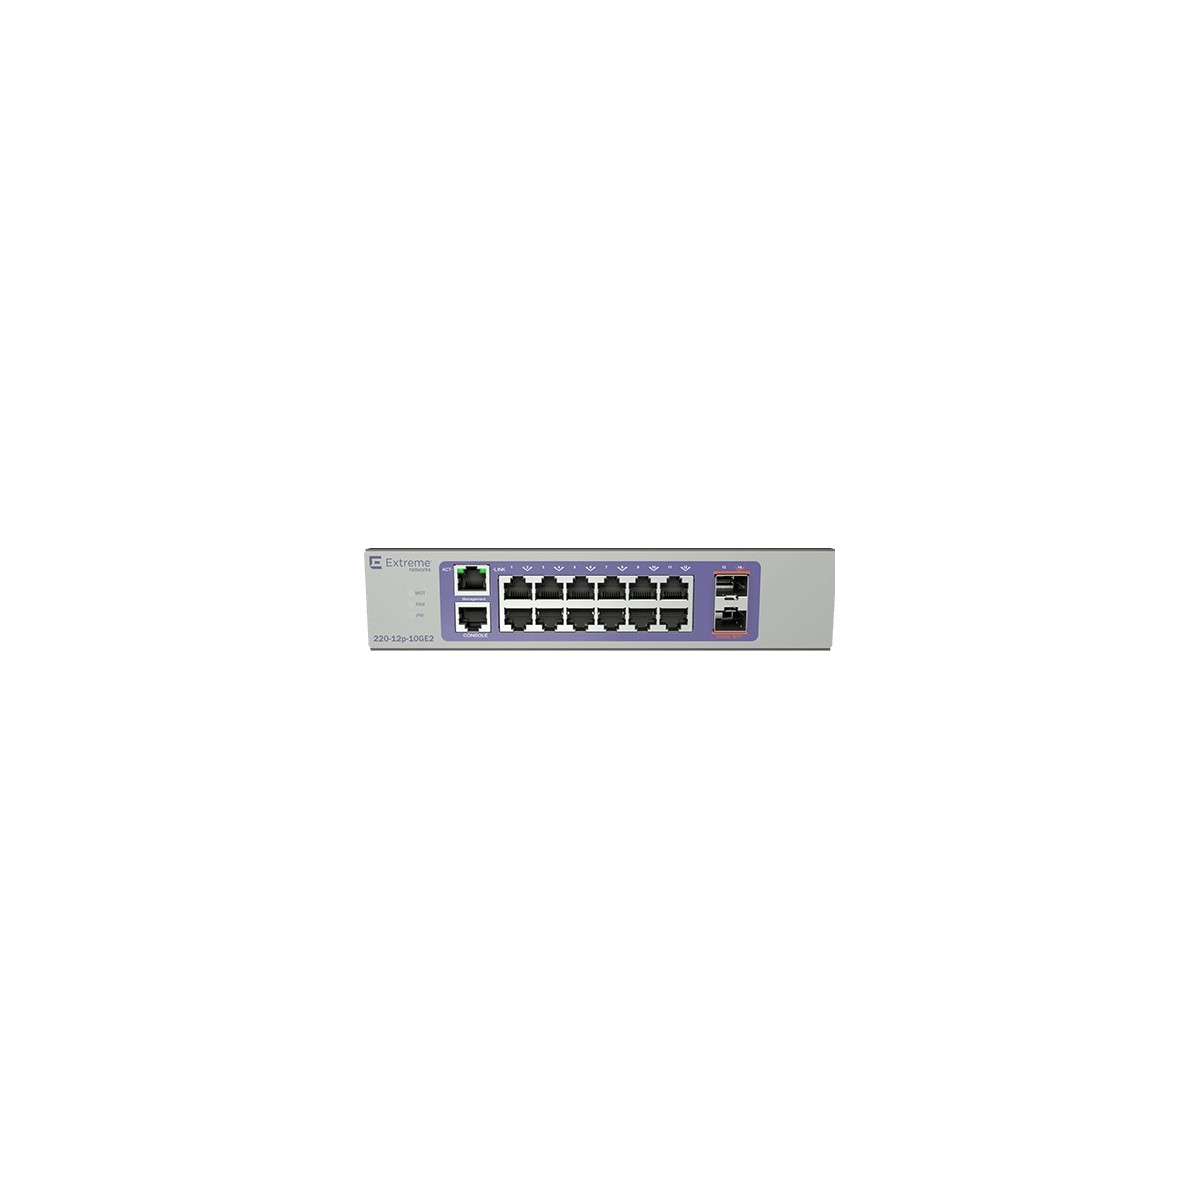 Extreme Networks 220-12P-10GE2 - Managed - L2/L3 - Gigabit Ethernet (10/100/1000) - Power over Ethernet (PoE) - Rack mounting - 